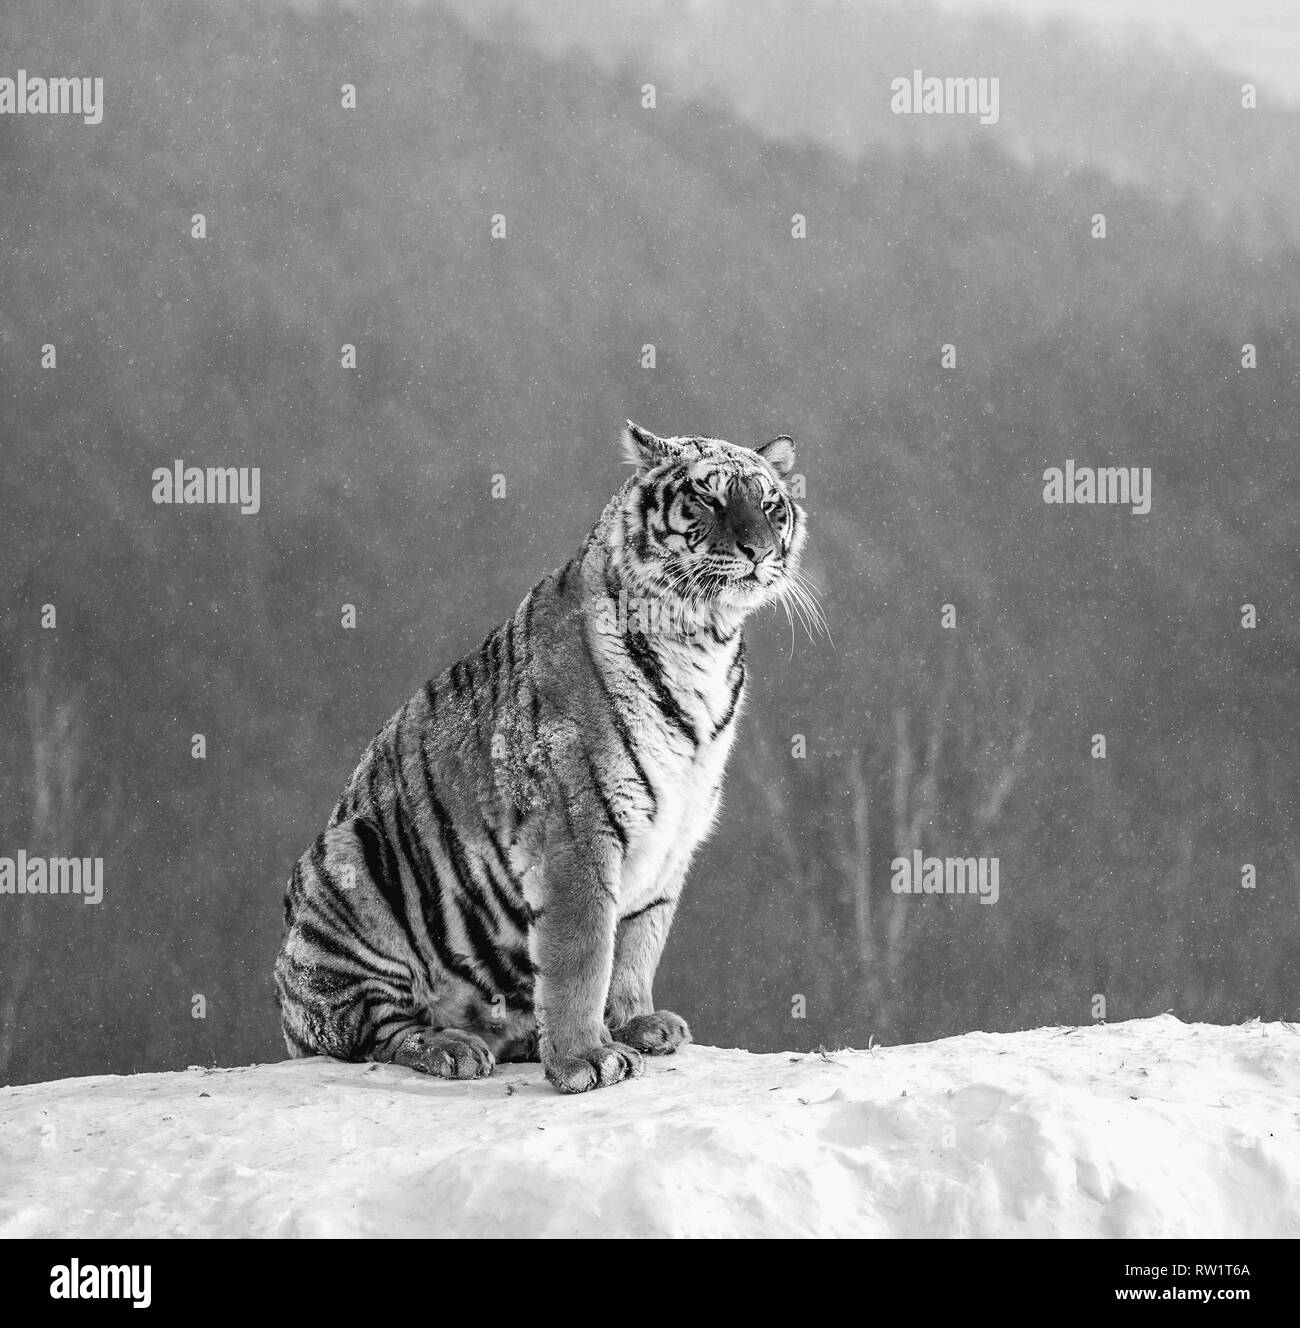 Tigre Siberiana si siede su una collina innevate sullo sfondo di un bosco d'inverno. In bianco e nero. Cina. Harbin. Mudanjiang provincia. Hengdaohezi park. Foto Stock